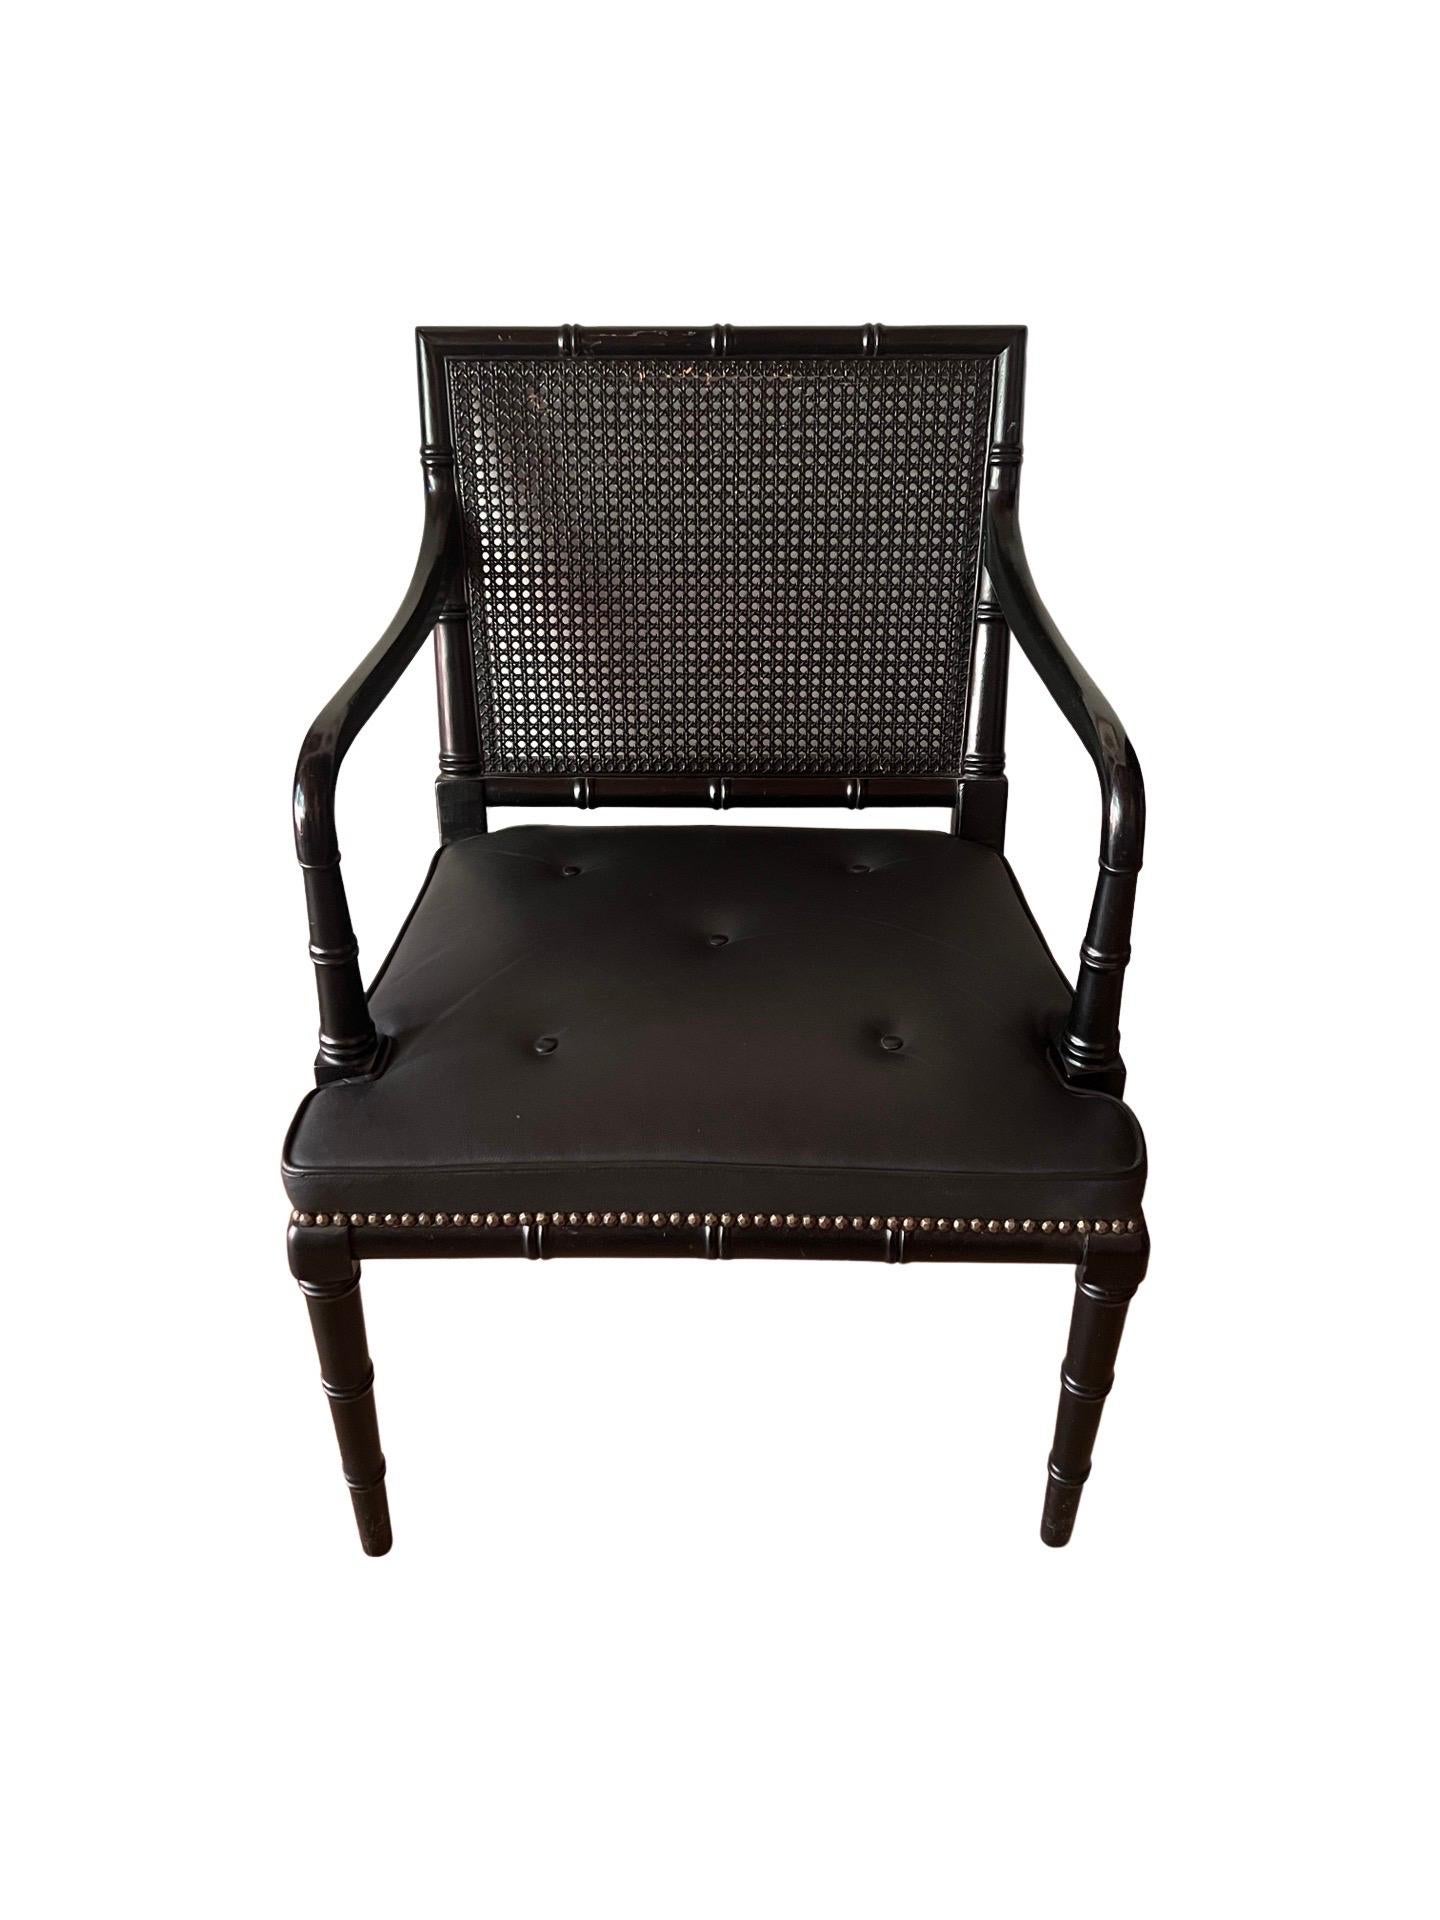 Anglais, 20e siècle. 
Une paire vintage de fauteuils anglais fabriqués sur banc. Chacun d'entre eux est doté d'un cadre en faux bambou de style Regency avec une finition ébène. Les sièges sont dotés de boutons encastrés et d'un dossier en rotin. Non